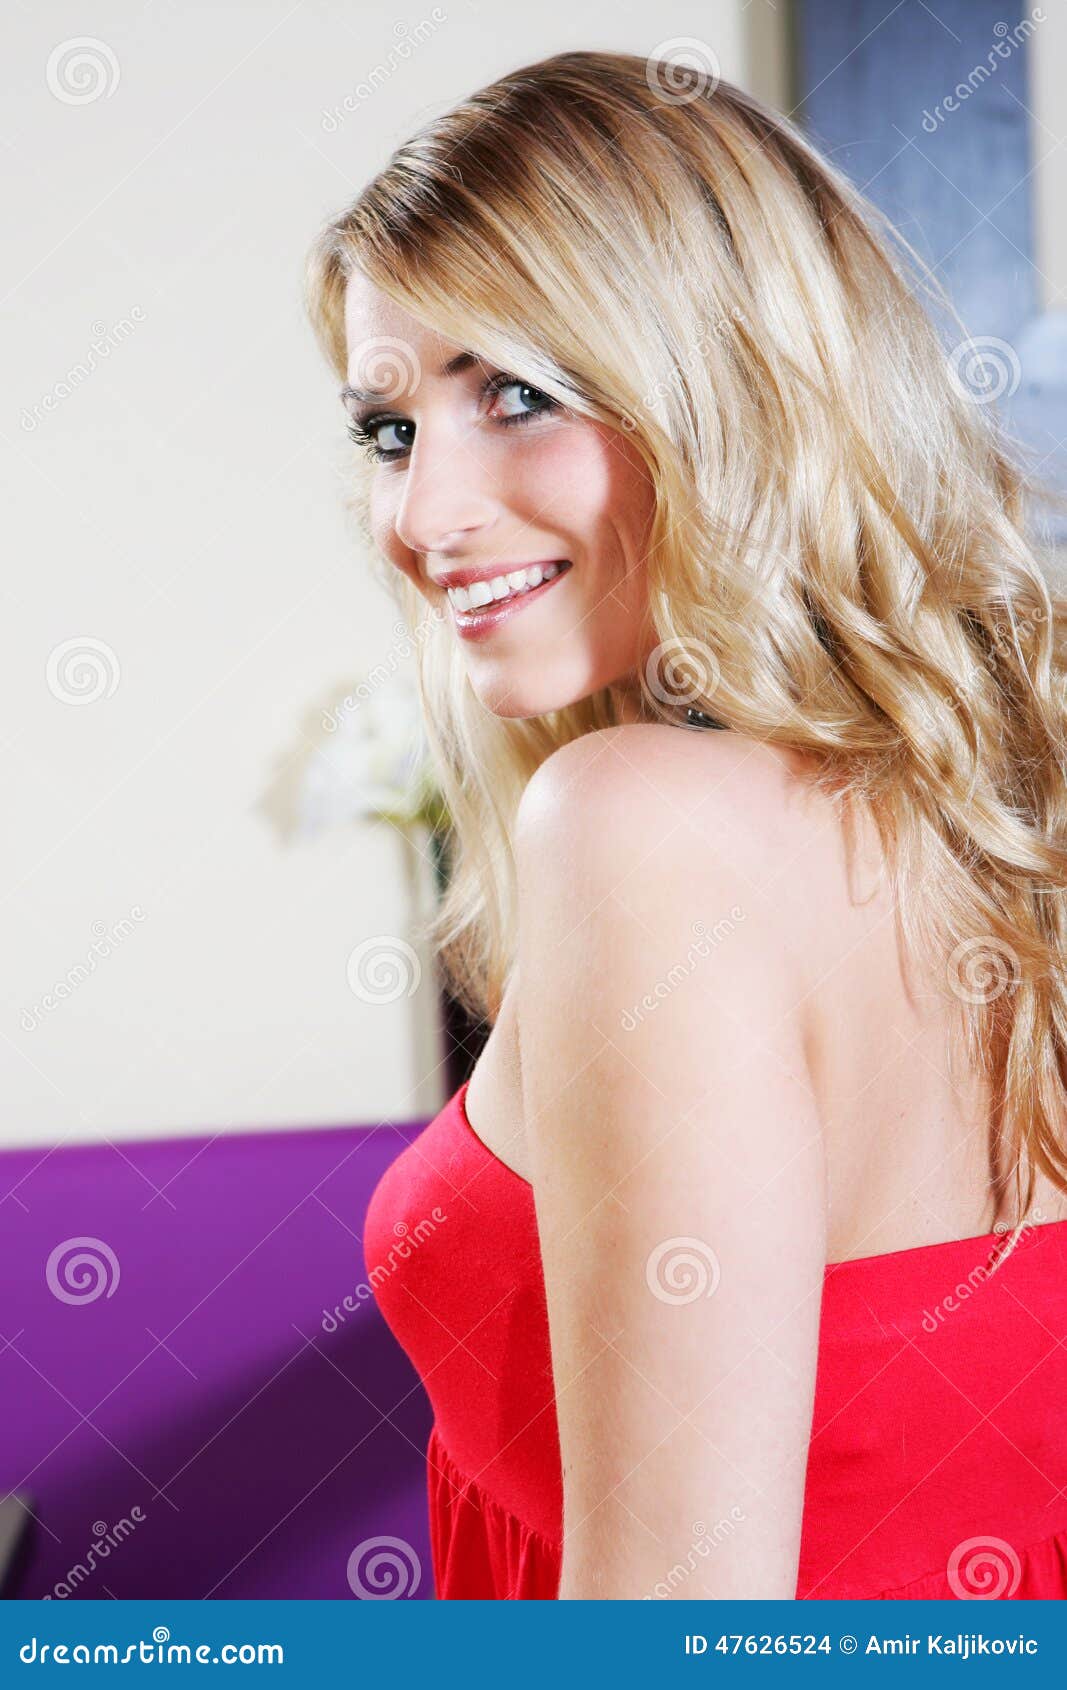 Mujer Sonriente Bonita En Top Sin Tirantes Rojo de archivo - Imagen de primer: 47626524